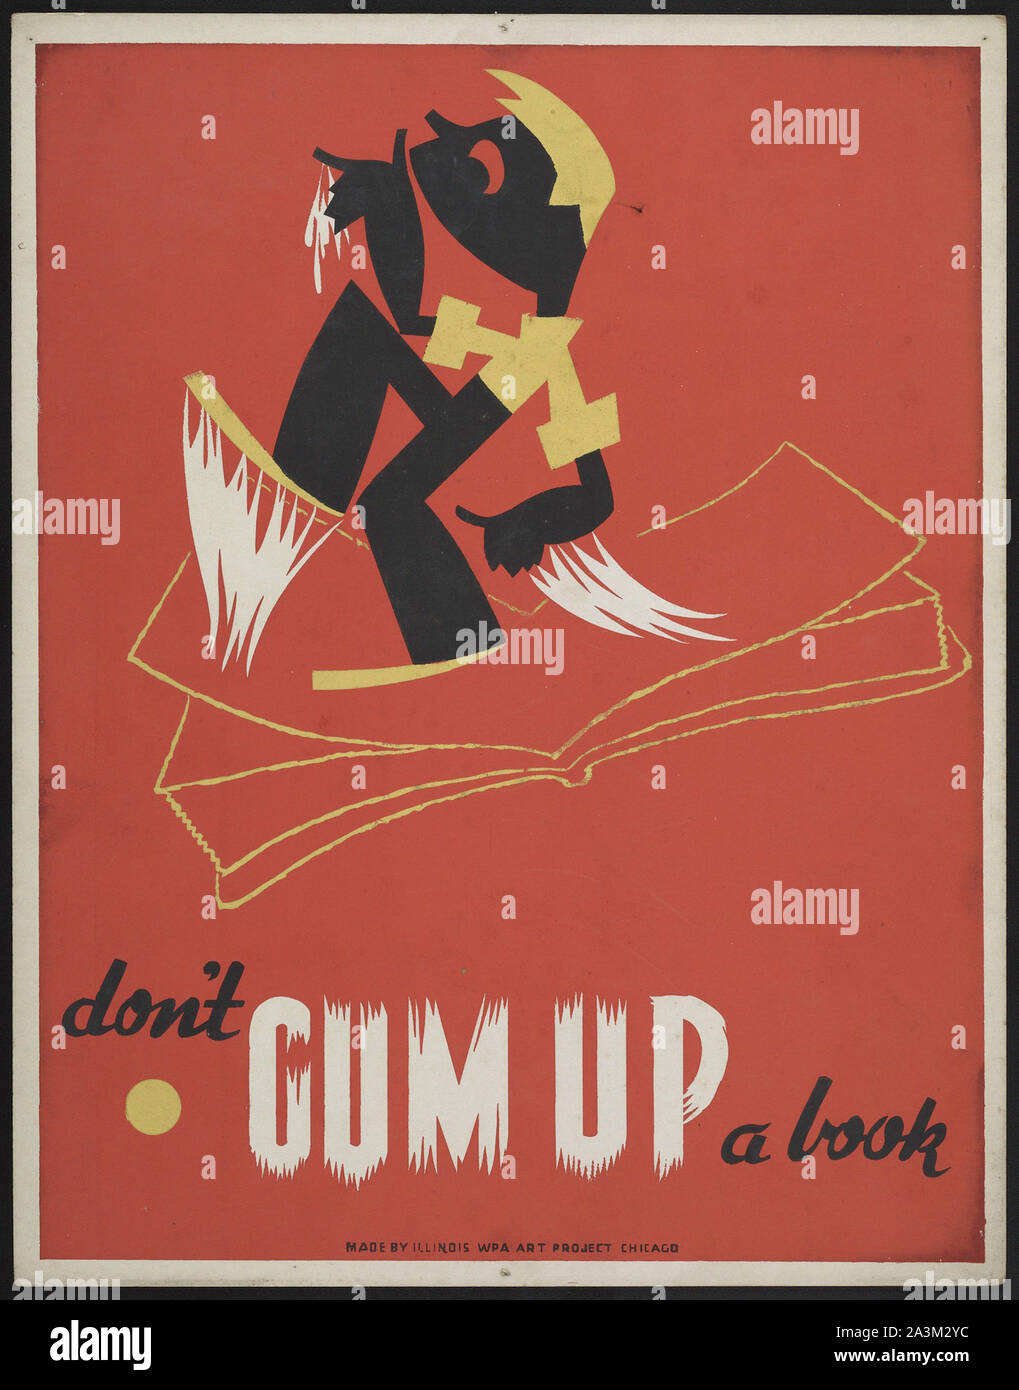 No Gum un libro - Avance de trabajo Administración - Proyecto de arte Federal - Vintage poster Foto de stock